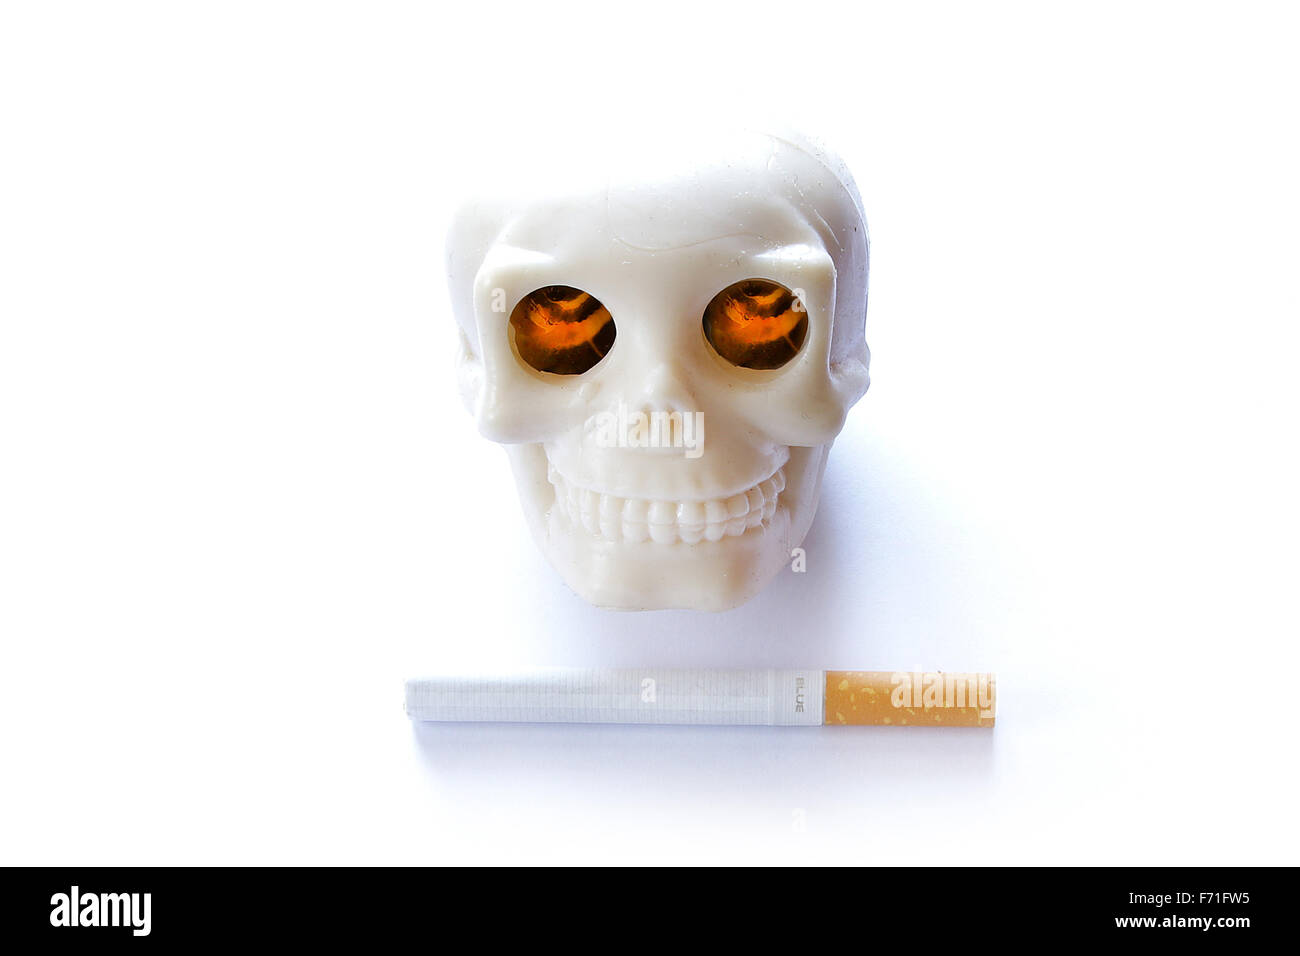 Il fumo uccide vintage teschio umano con bruciare gli occhi illuminati e sigaretta su sfondo bianco Foto Stock